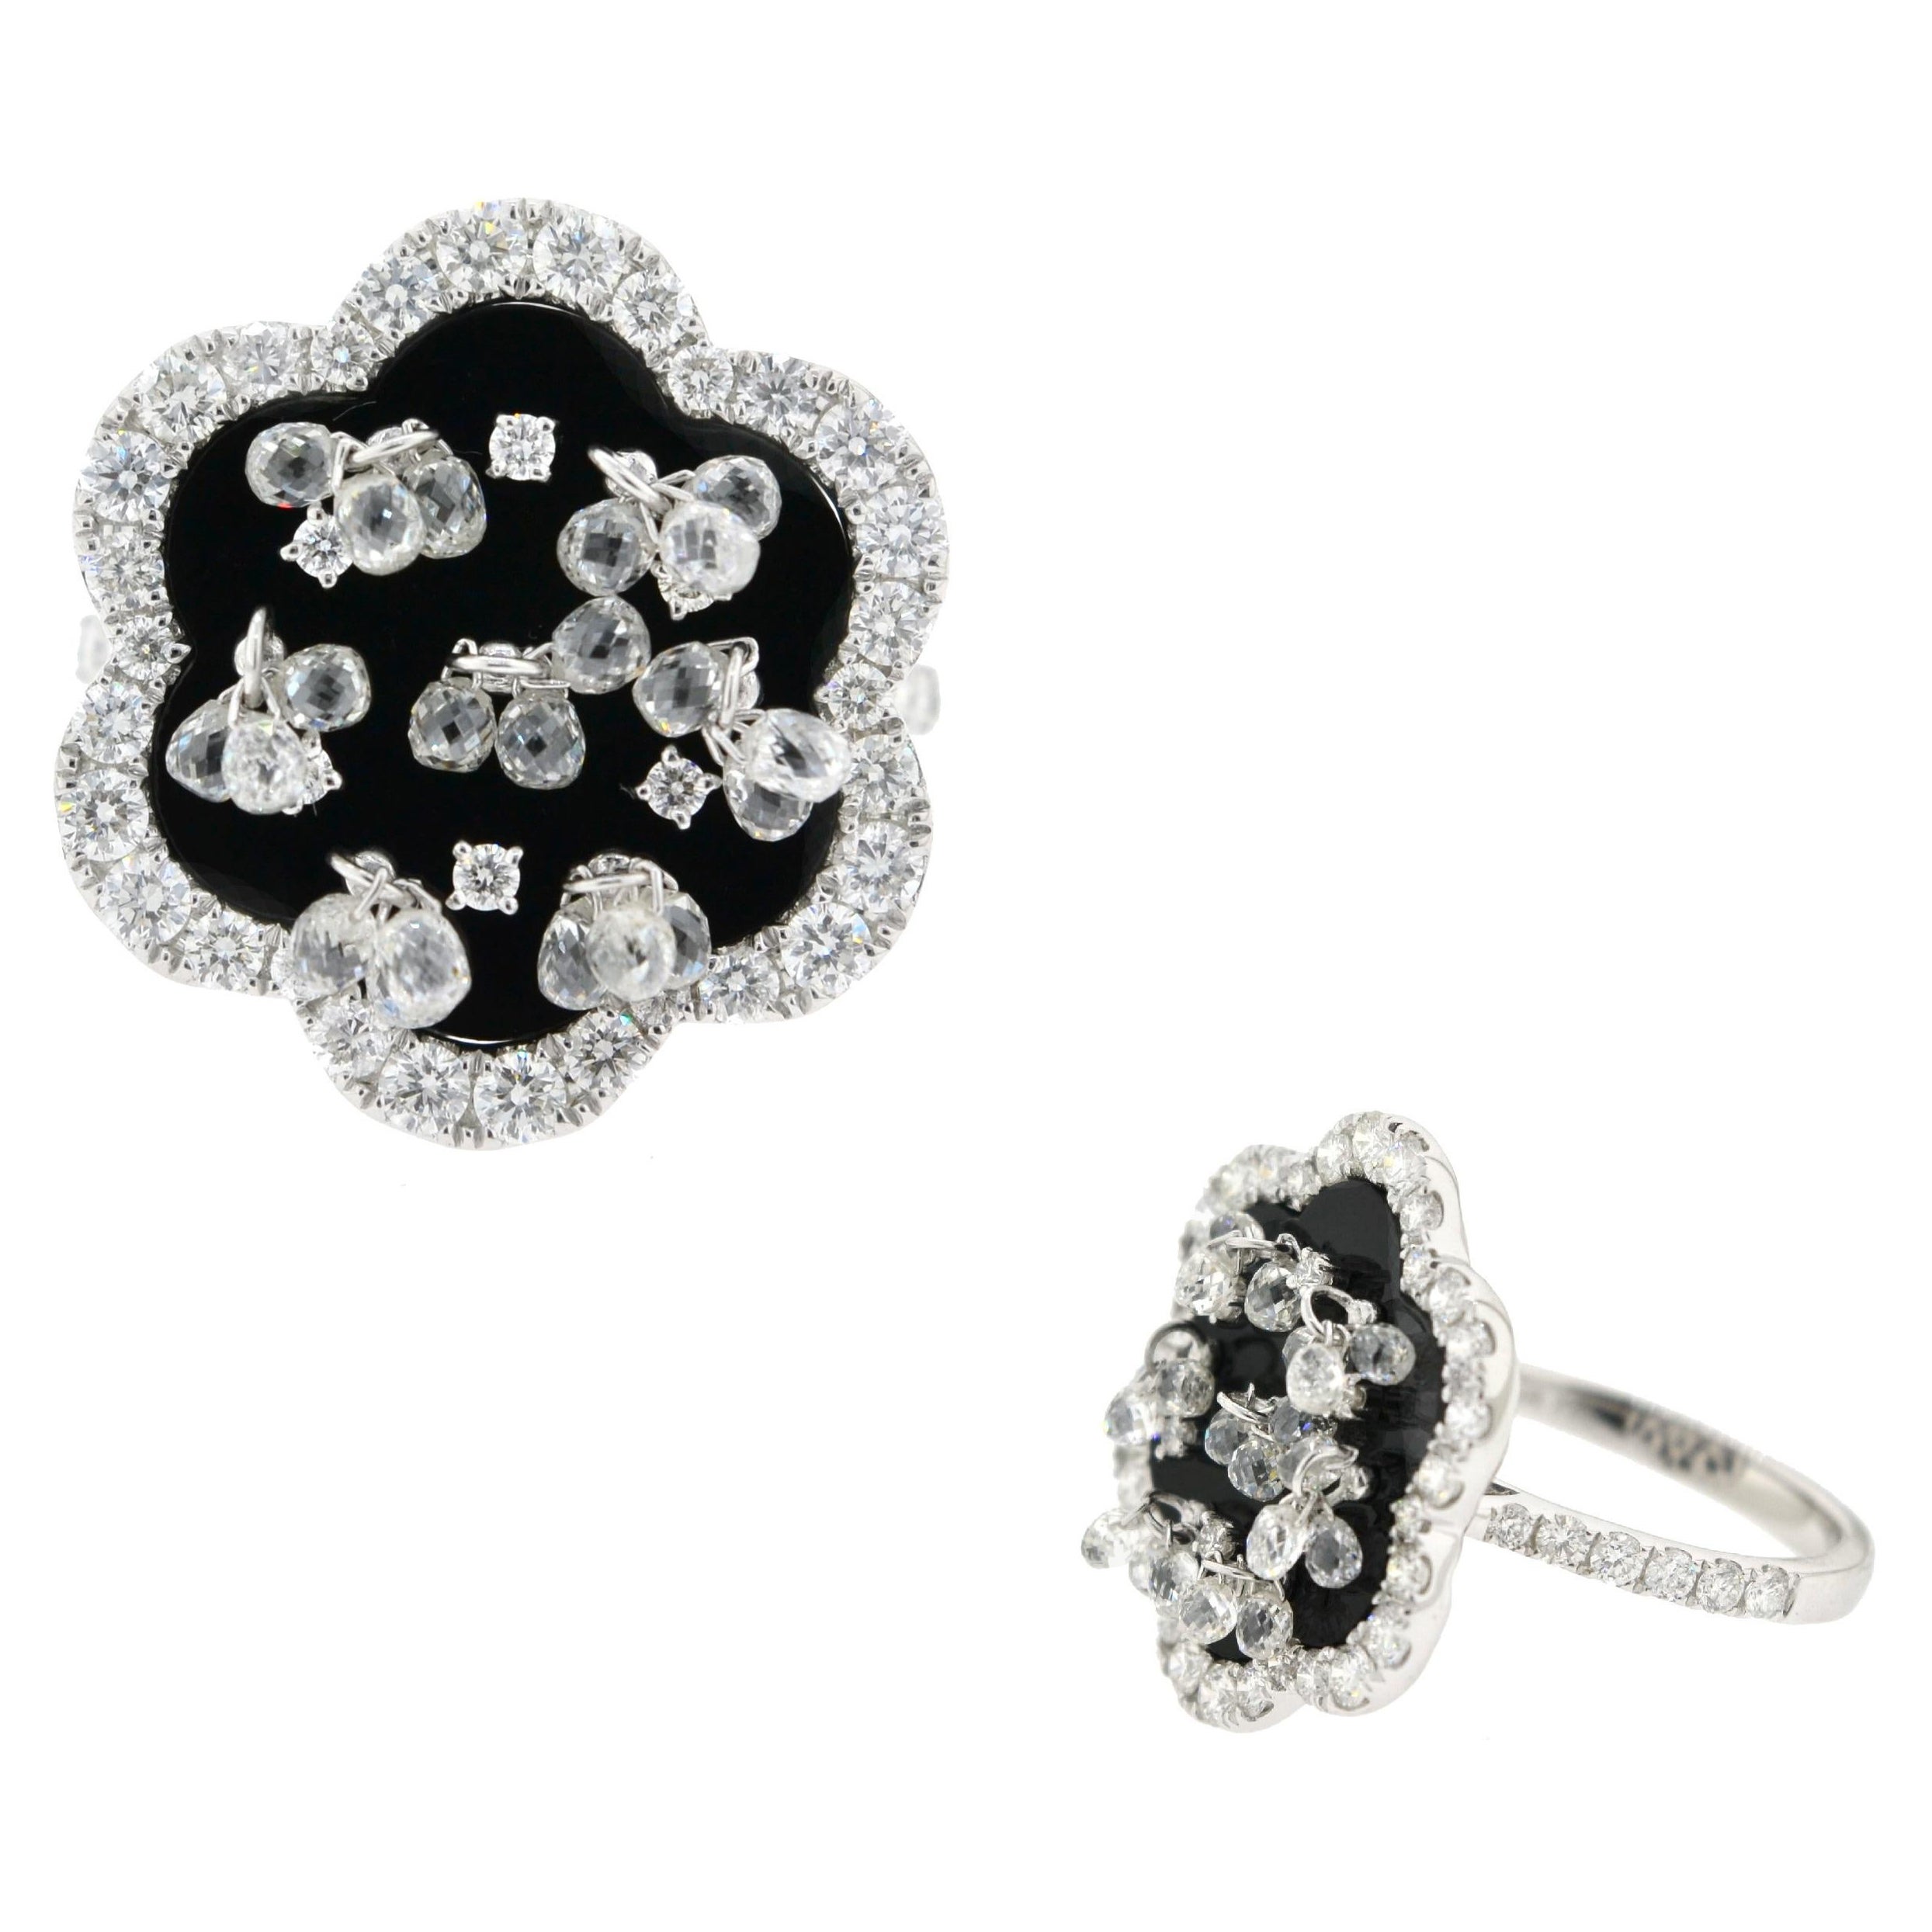 JR Briolette Diamond and Onyx Flower 18 Karat White Gold Ring